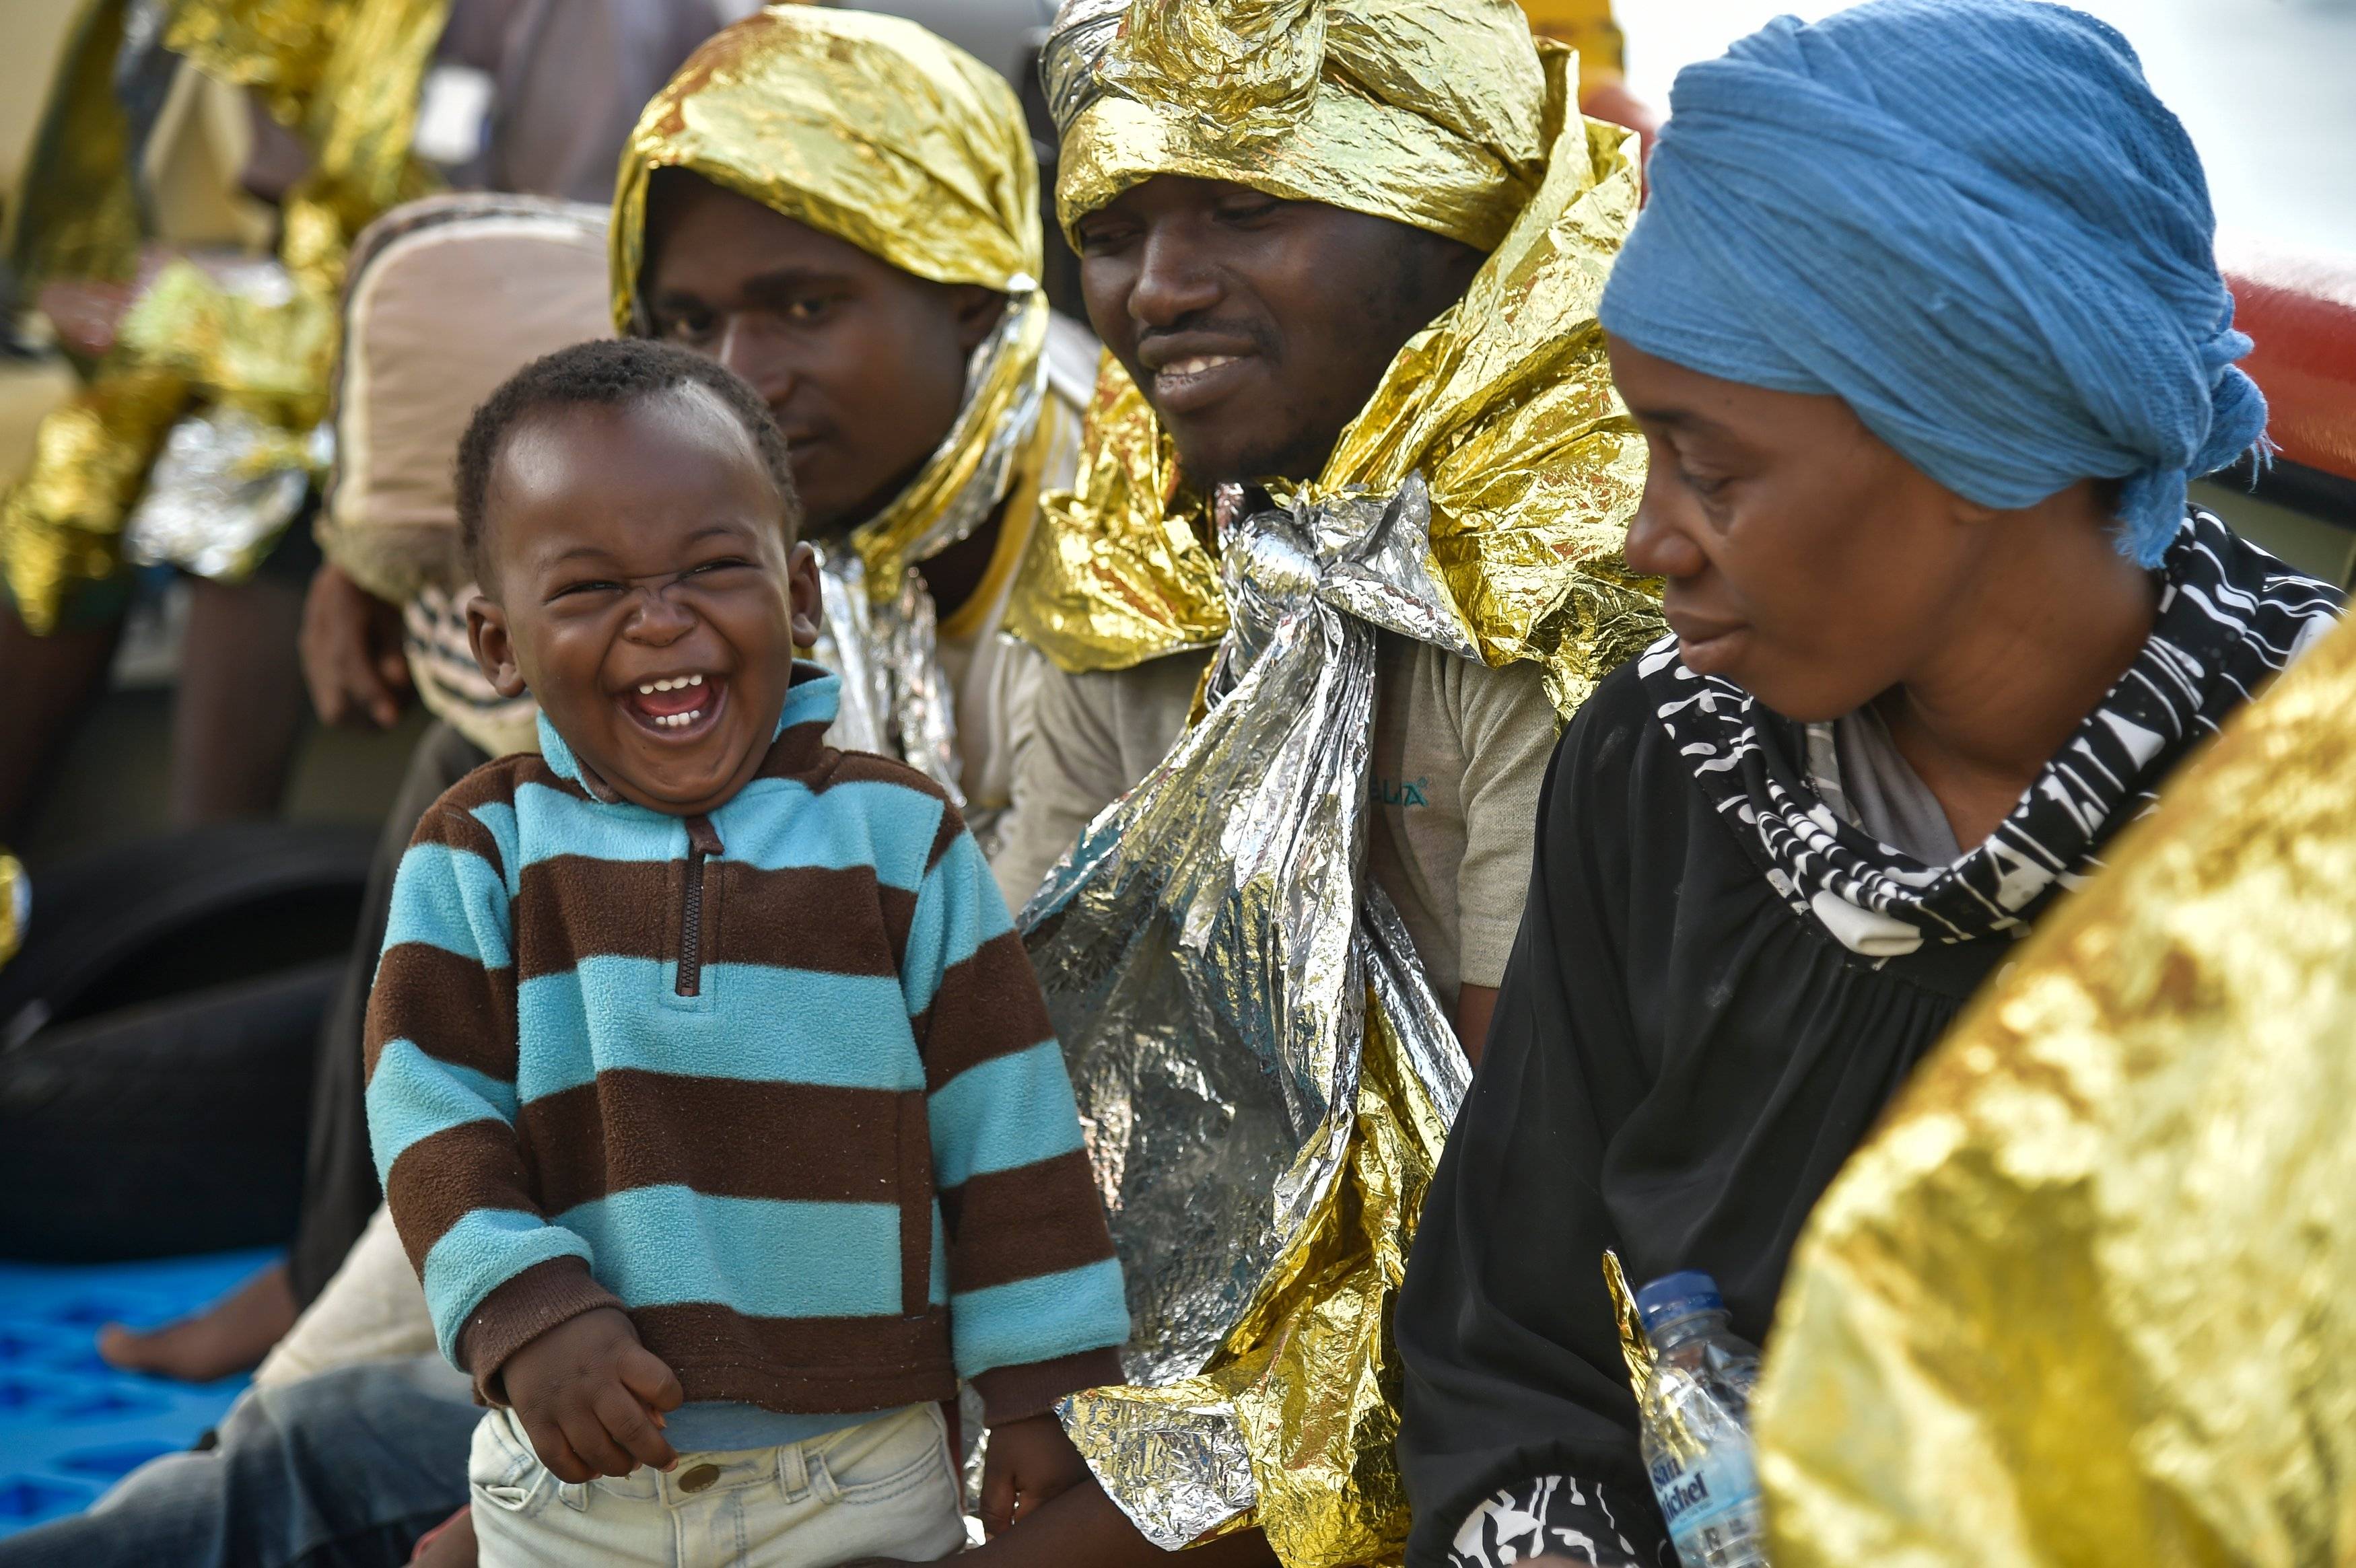 kobiety z Afryki owinięte w koce termiczne, na pierwszym planie śmiejący się chłopczyk